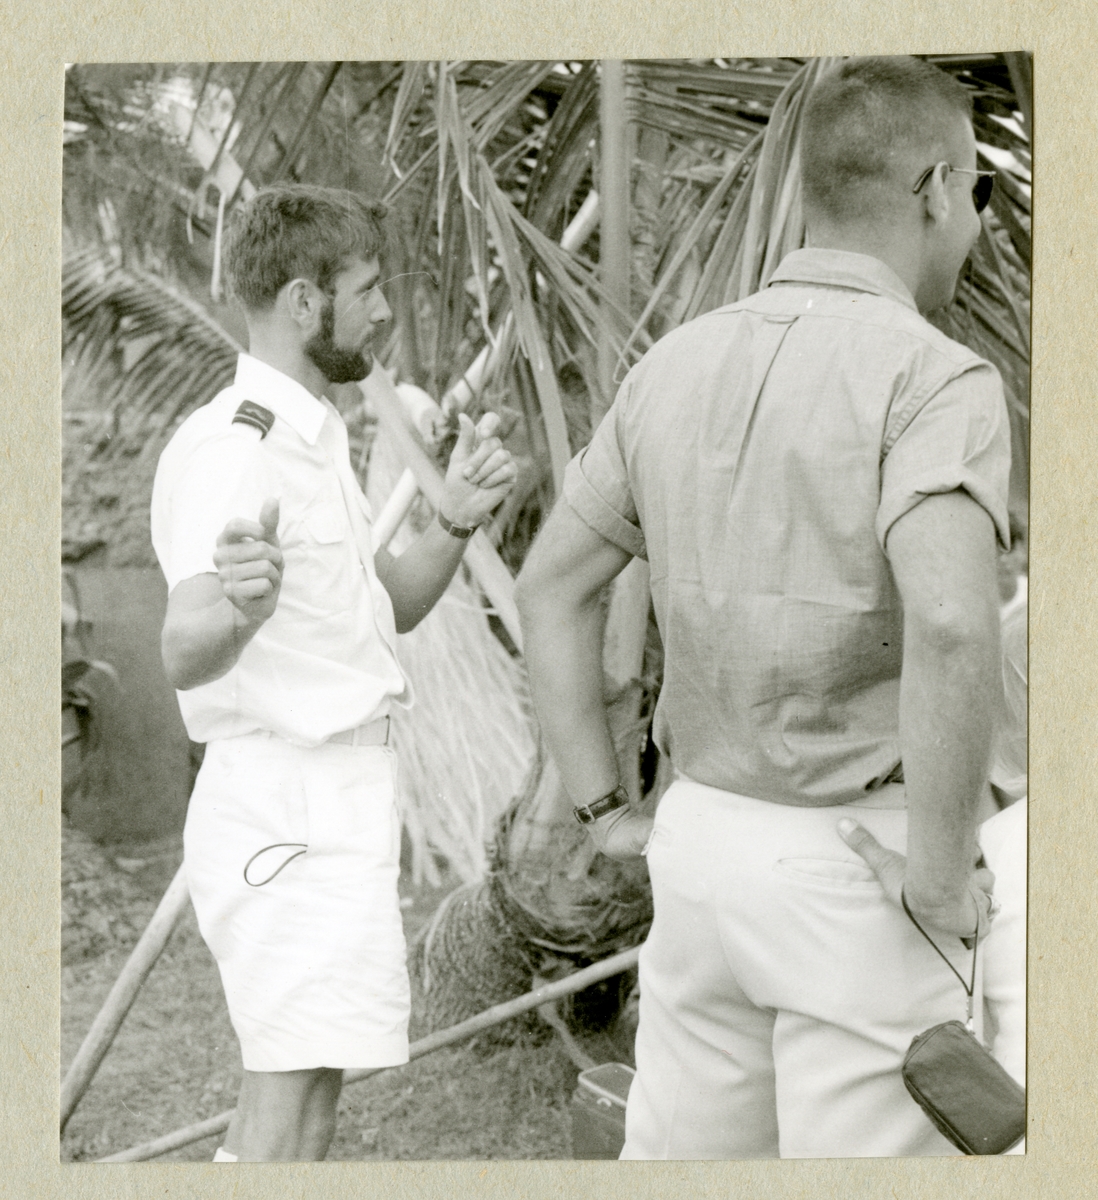 Bilden föreställer två män, varav en har vit sommaruniform, på Waikiki beach. Bilden är tagen i samband med minfartyget Älvsnabbens långresa 1966-1967.